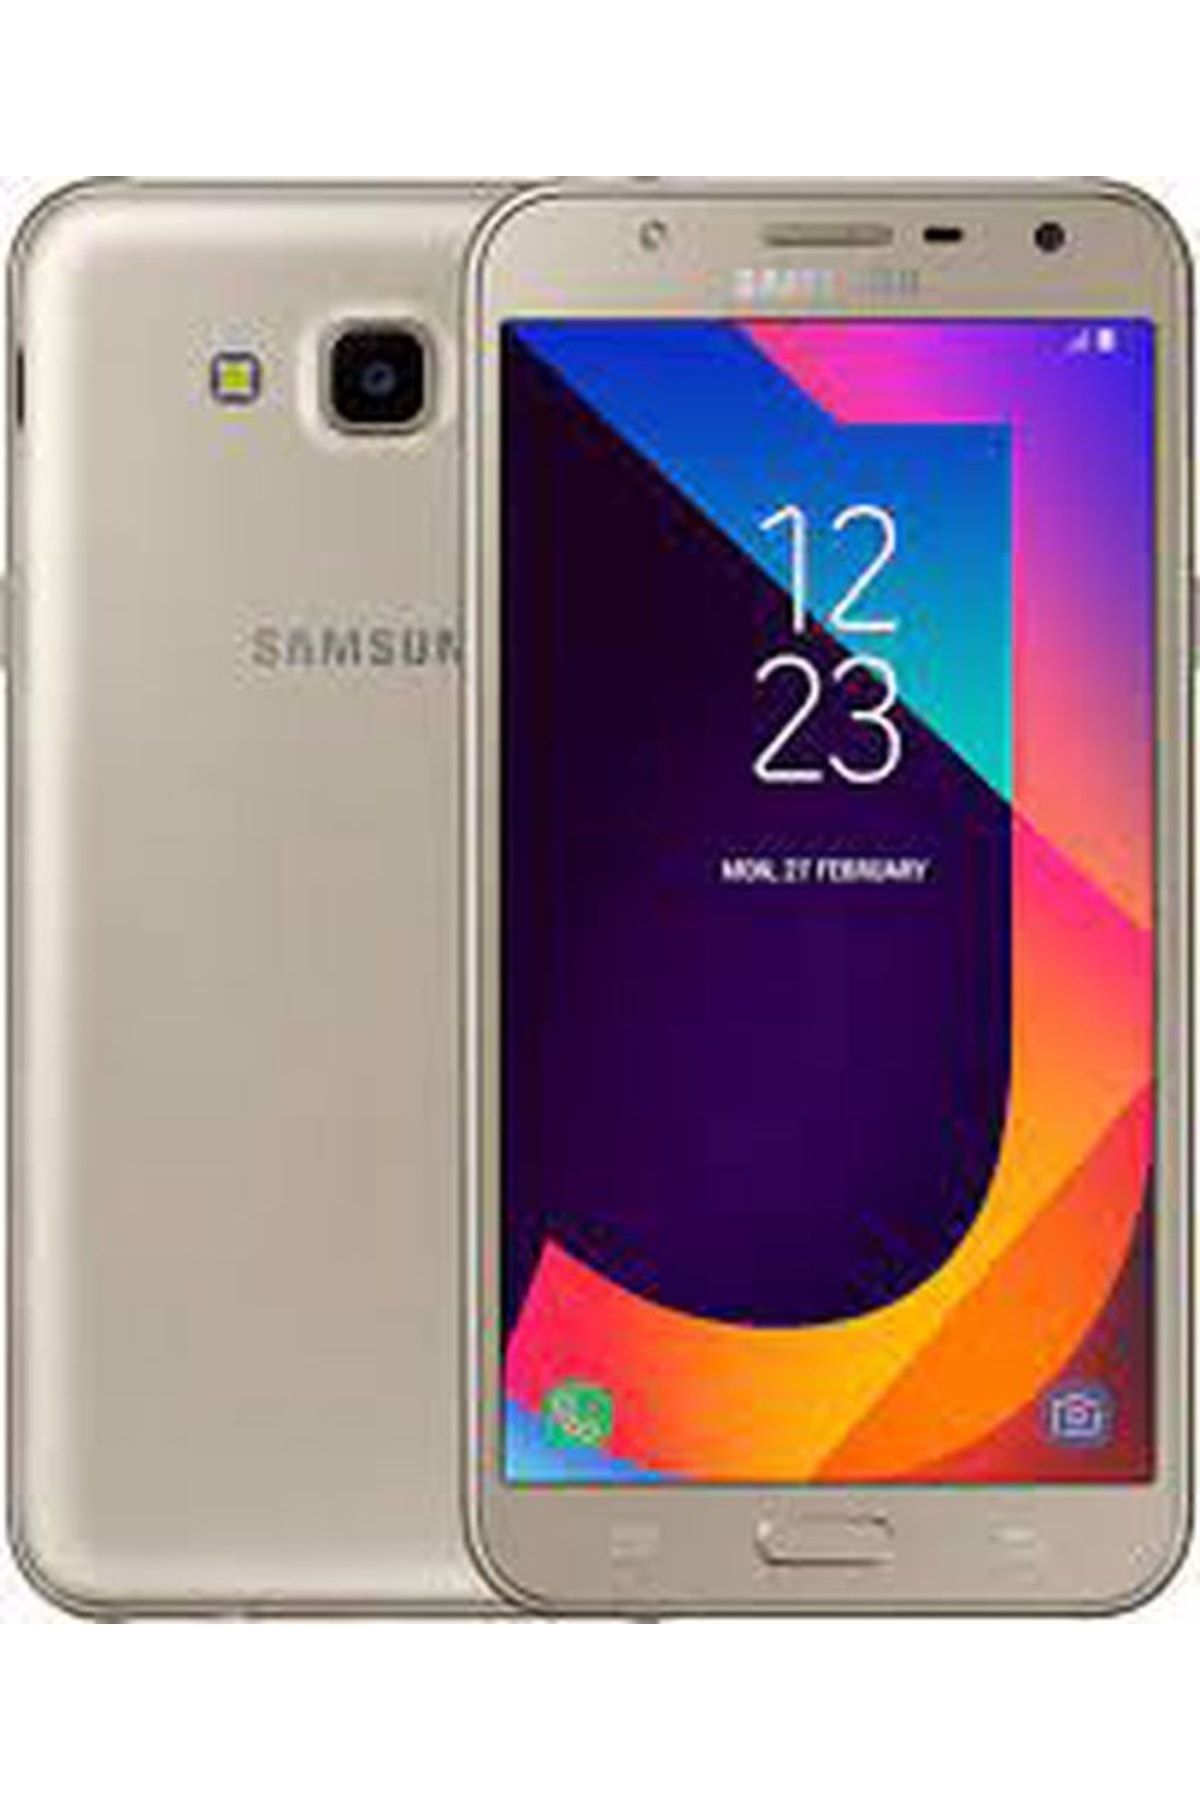 Samsung Yenilenmiş Galaxy J7 Core Altın Cep Telefonu (12 Ay Garantili)